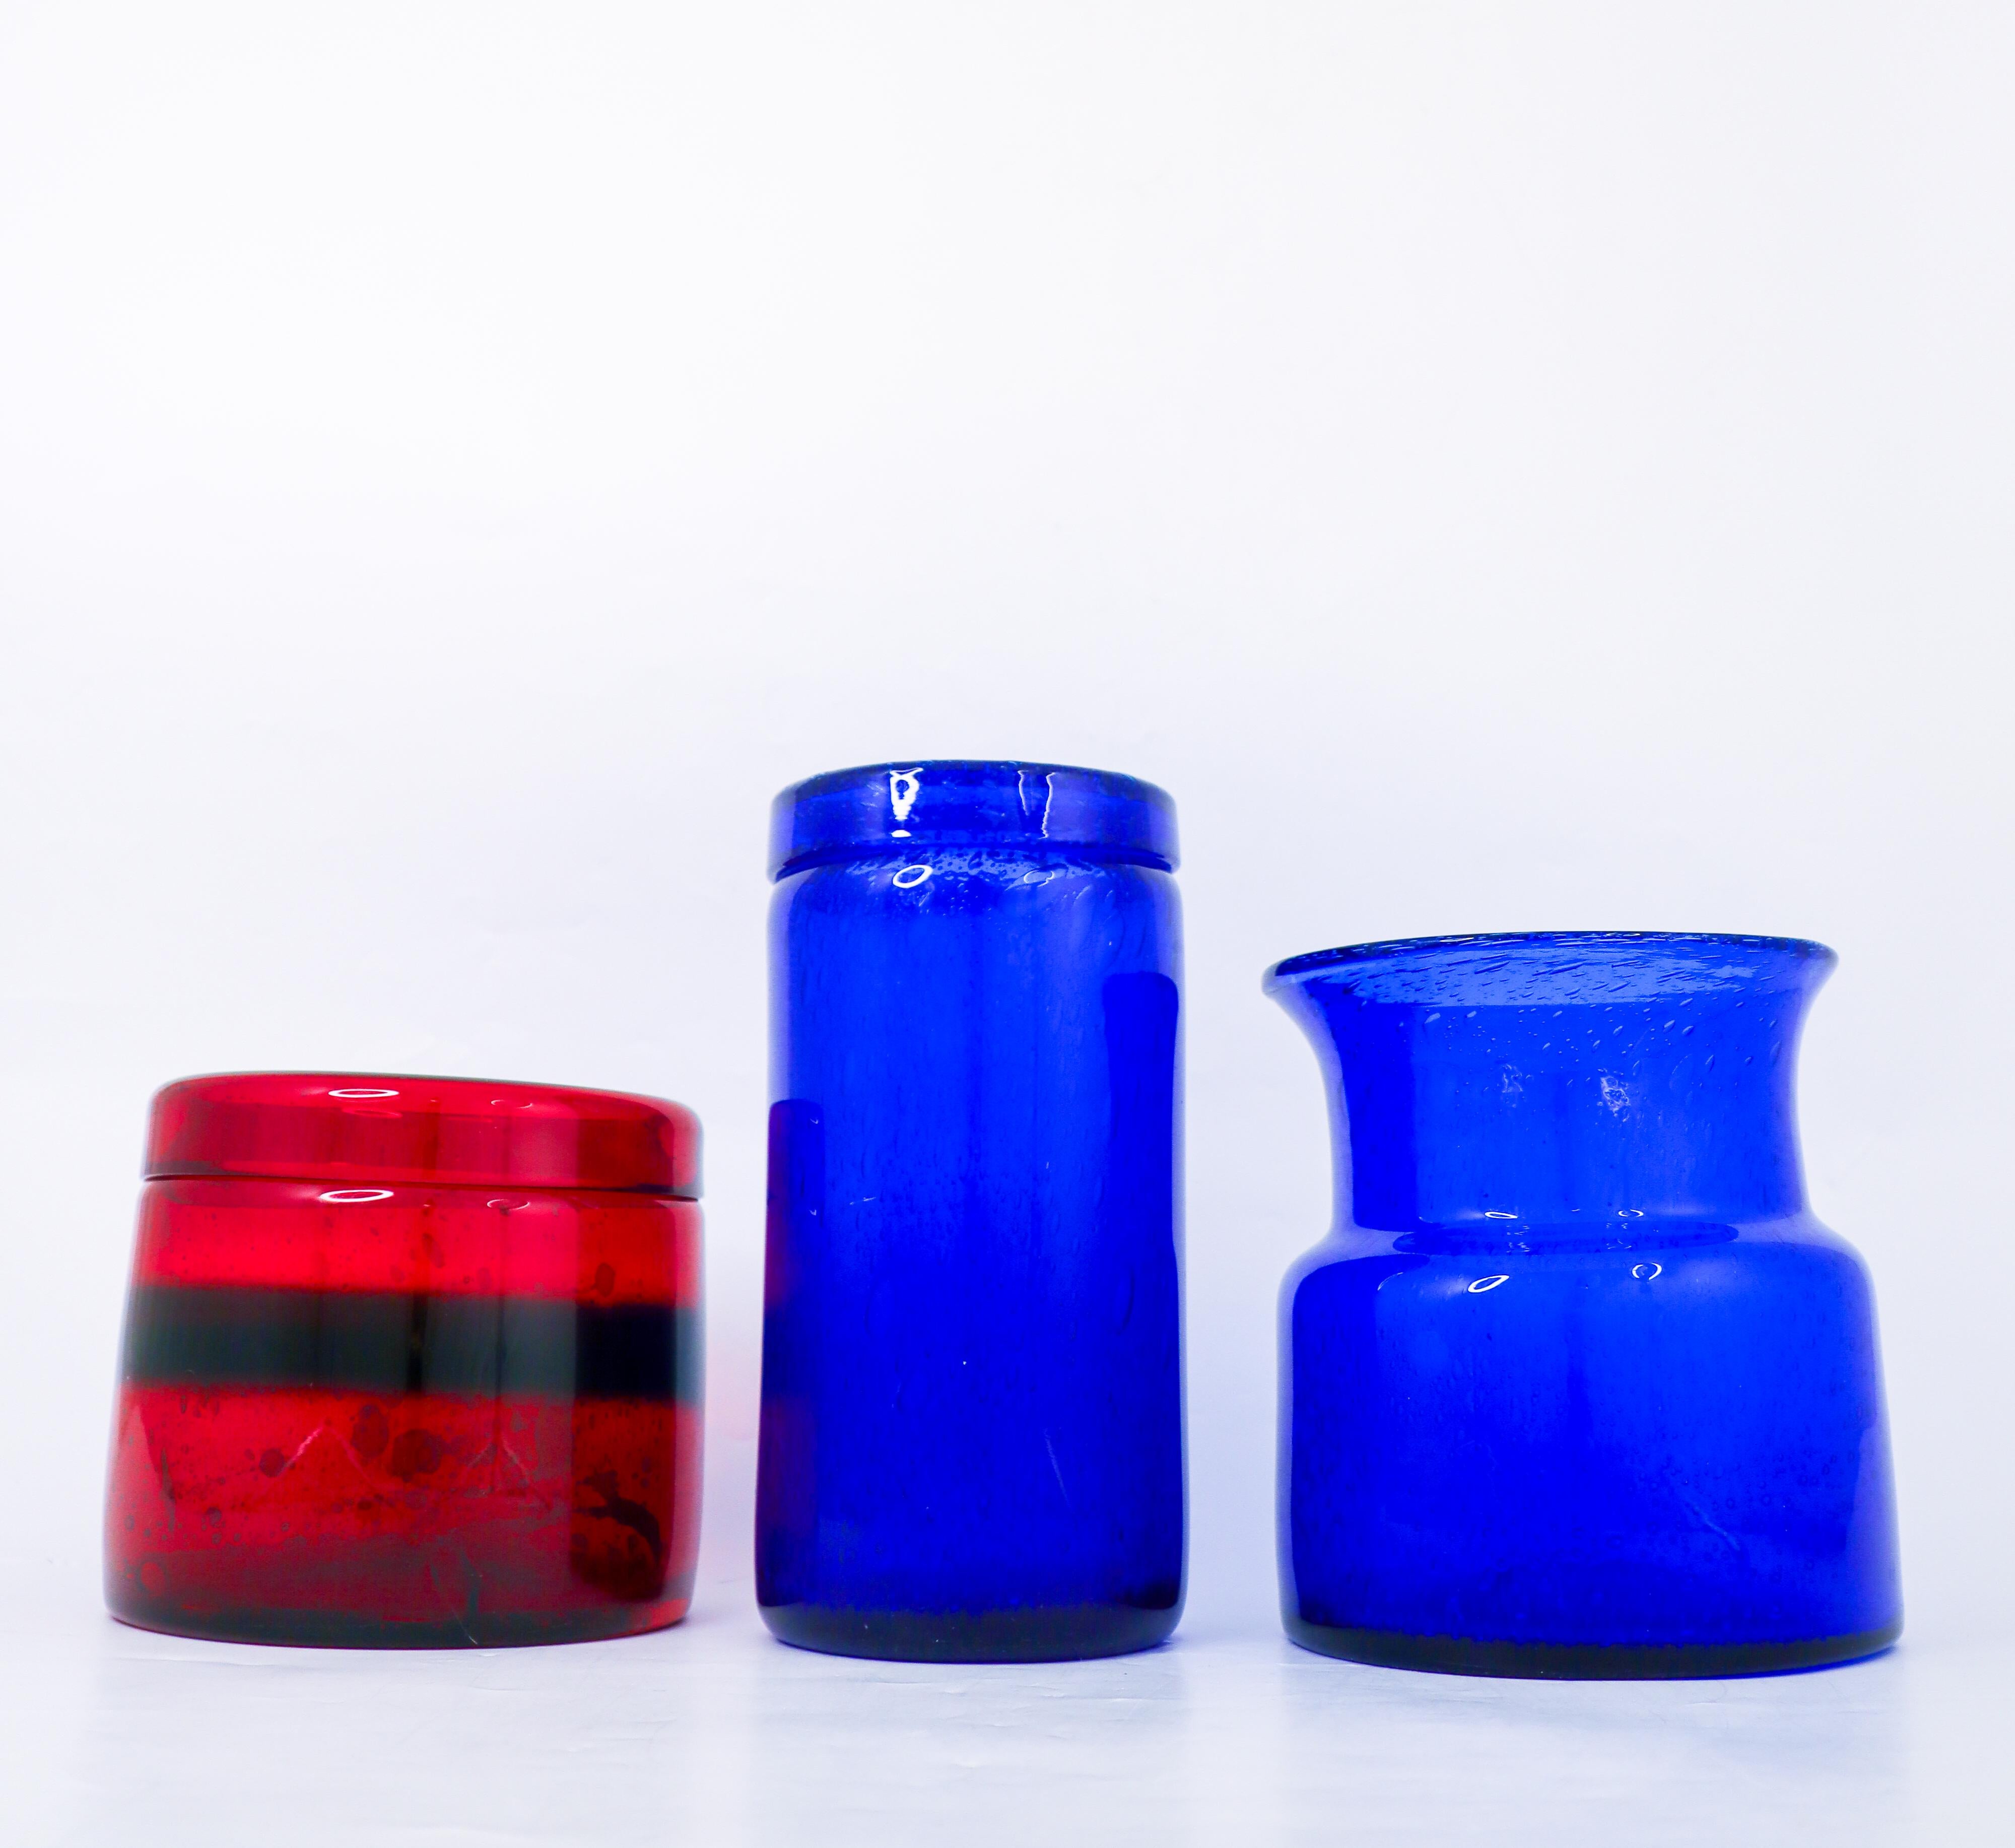 3 Red & Blue Glass Vases - Boda Sweden - Erik Höglund - 1960s Midcentury Modern In Good Condition For Sale In Stockholm, SE